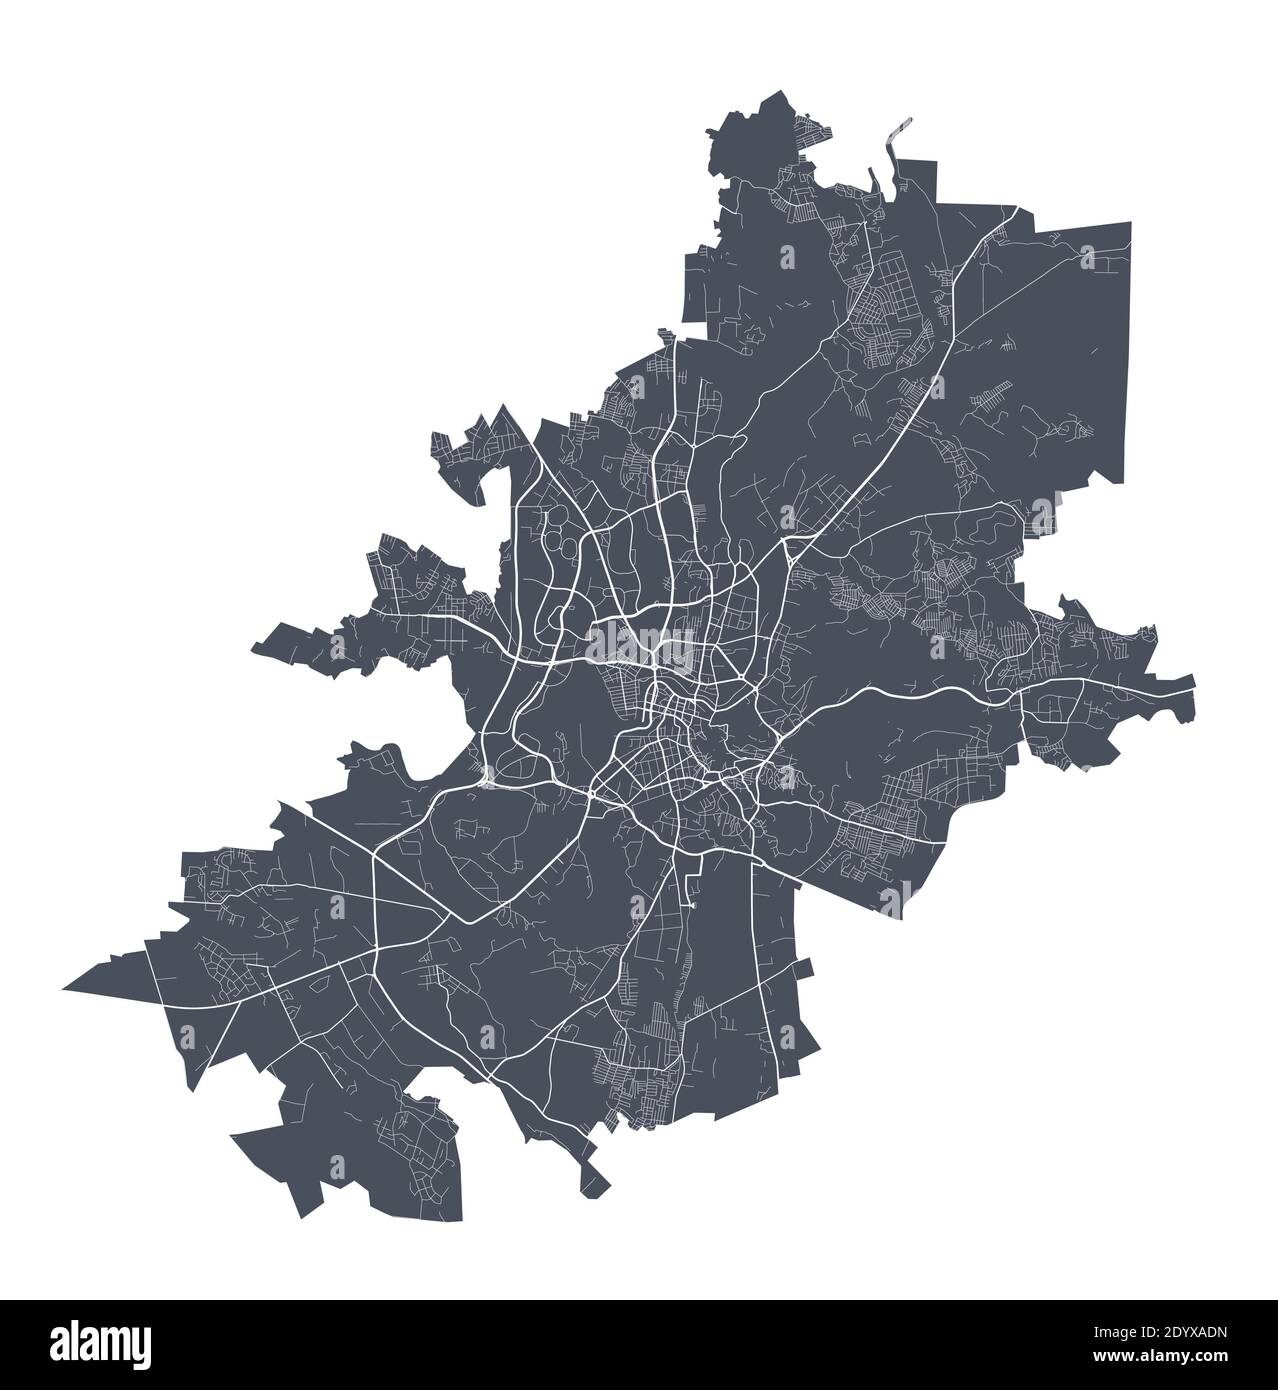 Vilnius-Karte. Detaillierte Vektorkarte von Vilnius Stadtverwaltung. Dunkles Plakat mit Straßen auf weißem Hintergrund. Stock Vektor